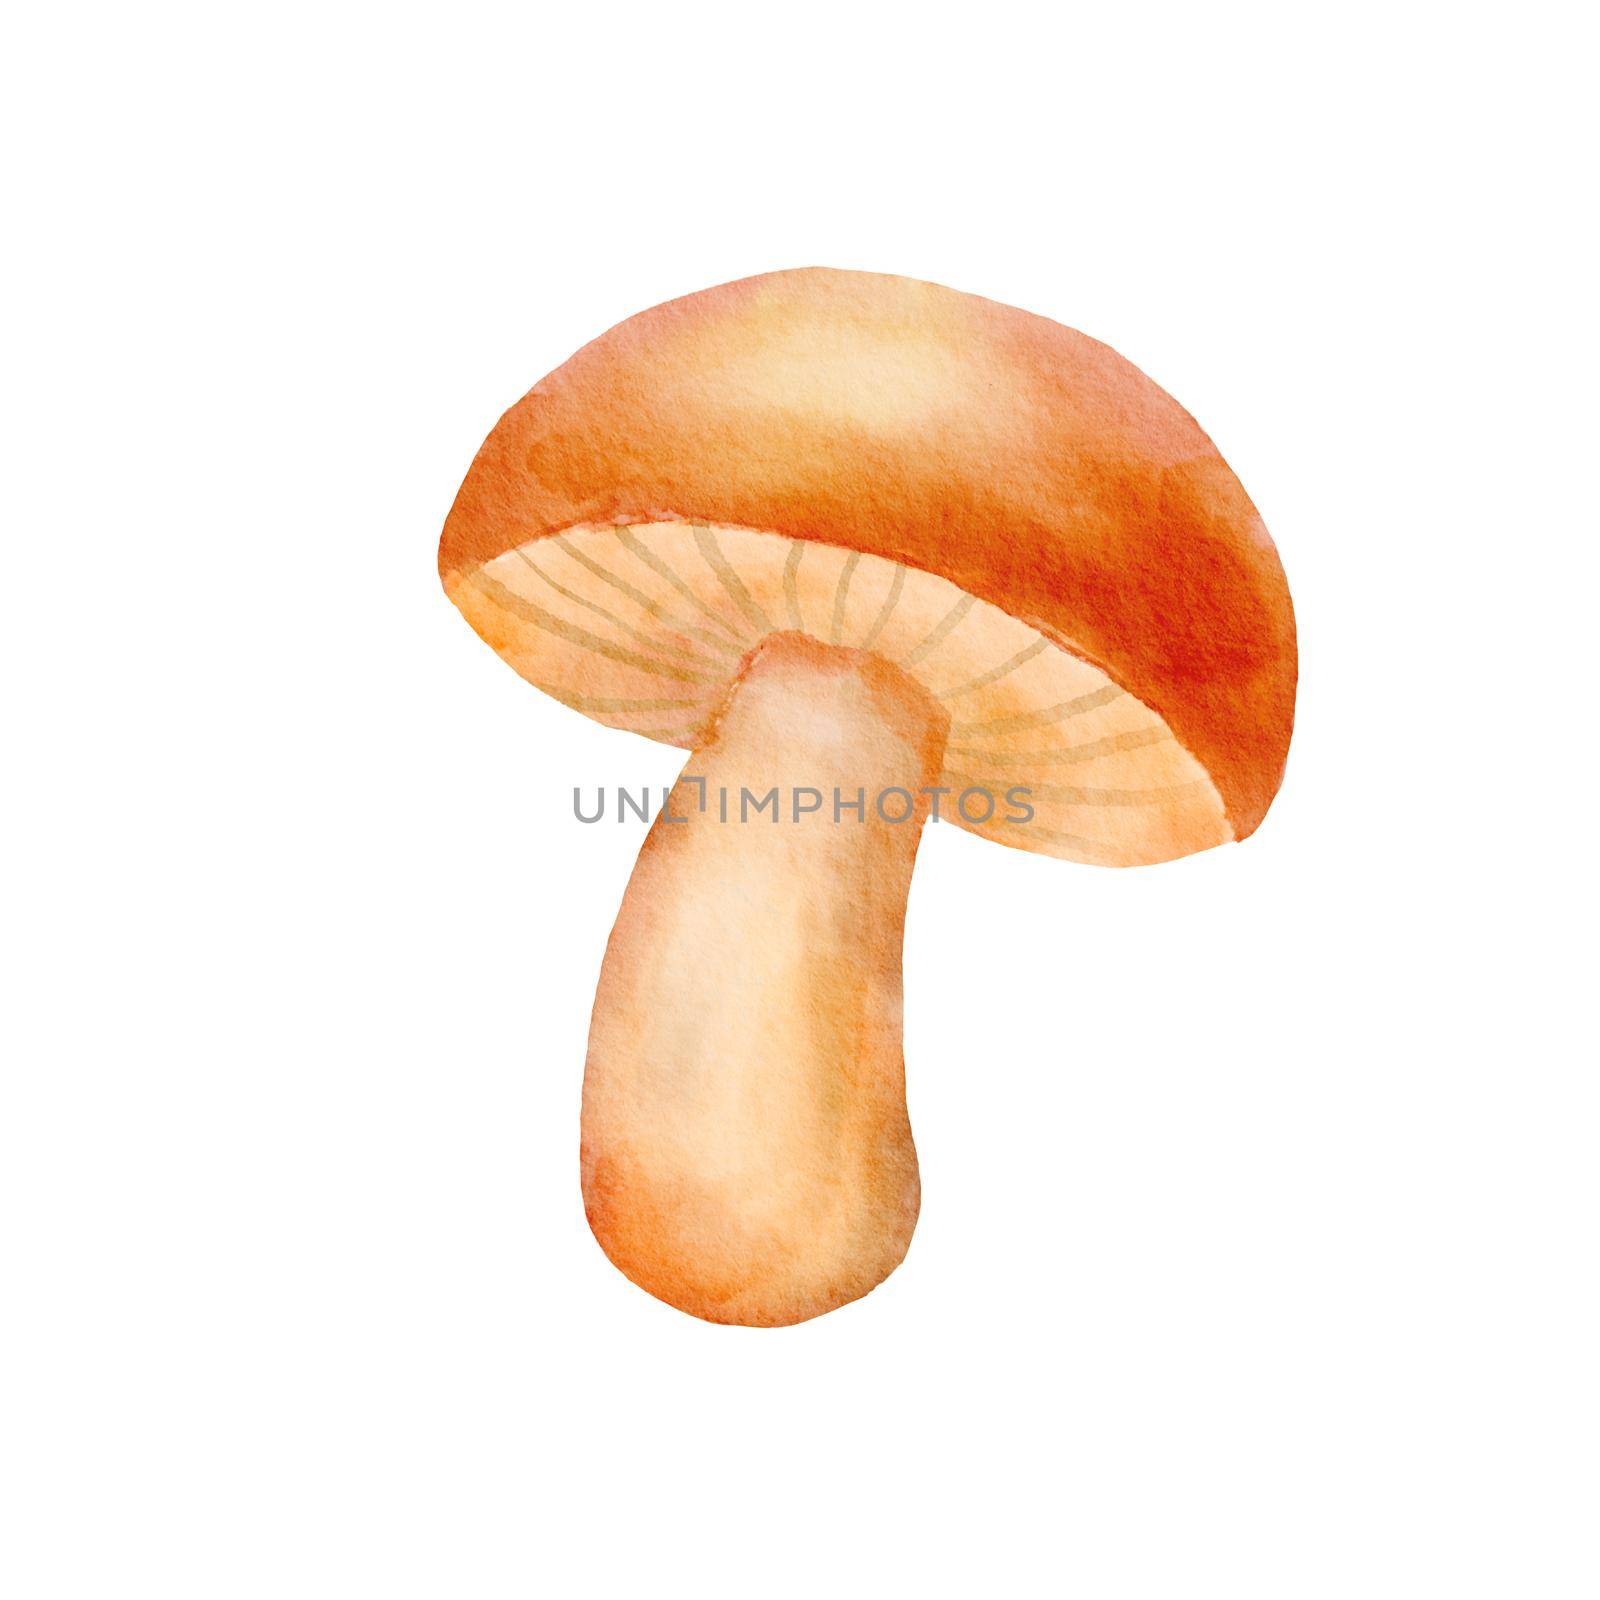 Boletus mushroom isolated on white. Watercolor cute illustration of autumn forest mushroom